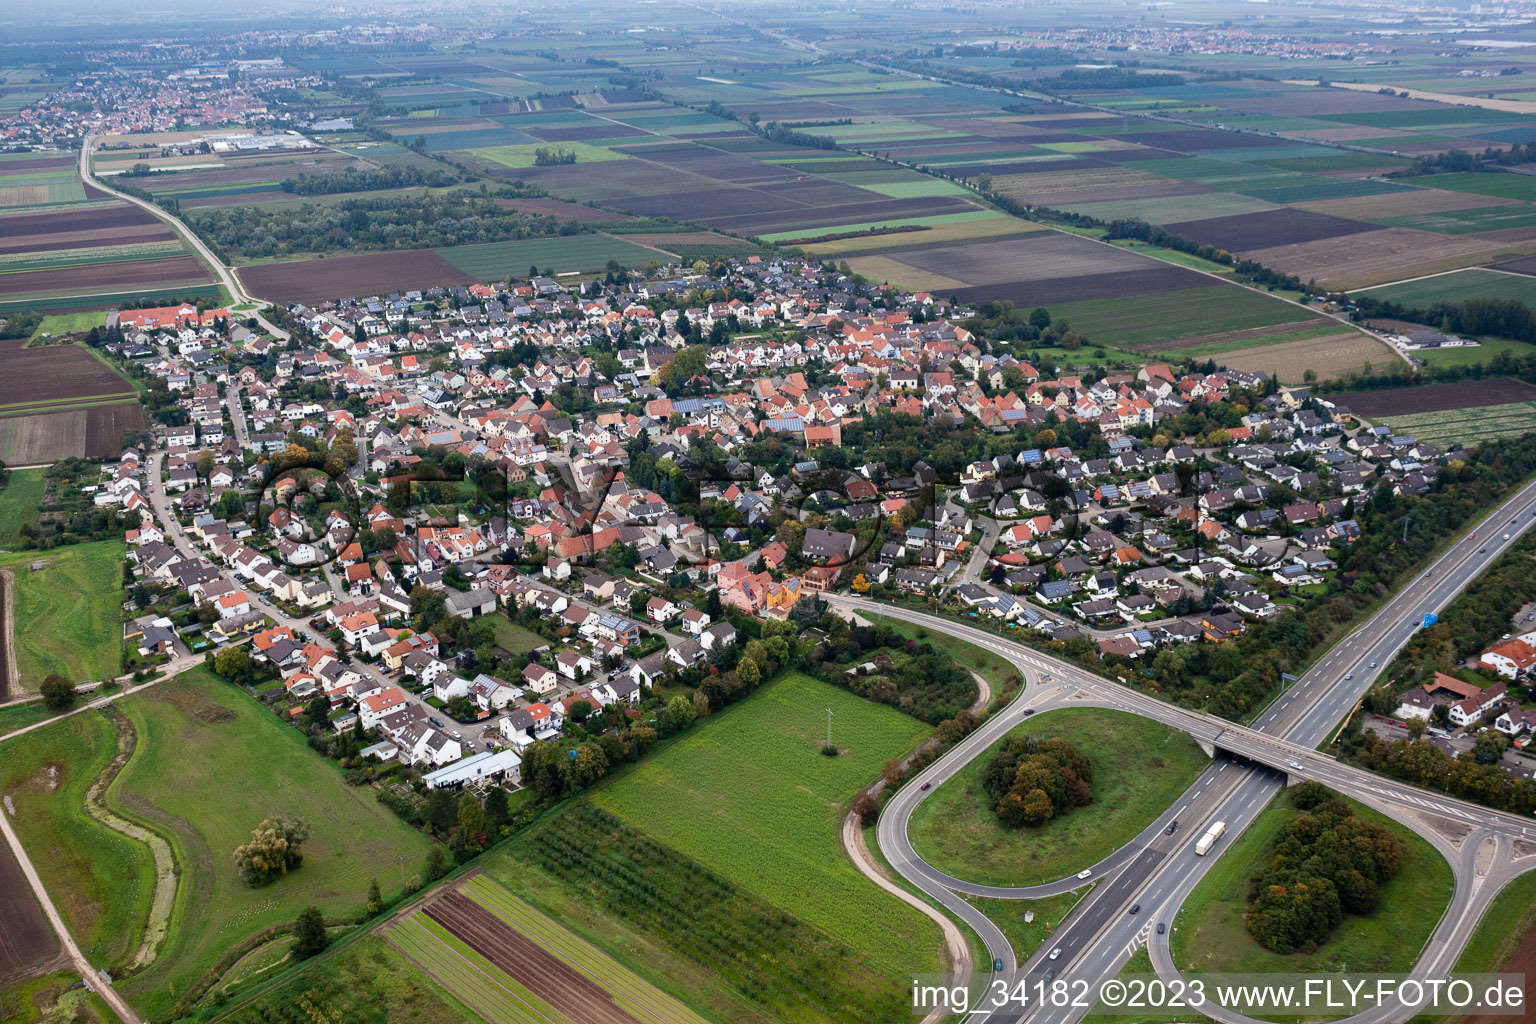 Aerial photograpy of District Schauernheim in Dannstadt-Schauernheim in the state Rhineland-Palatinate, Germany